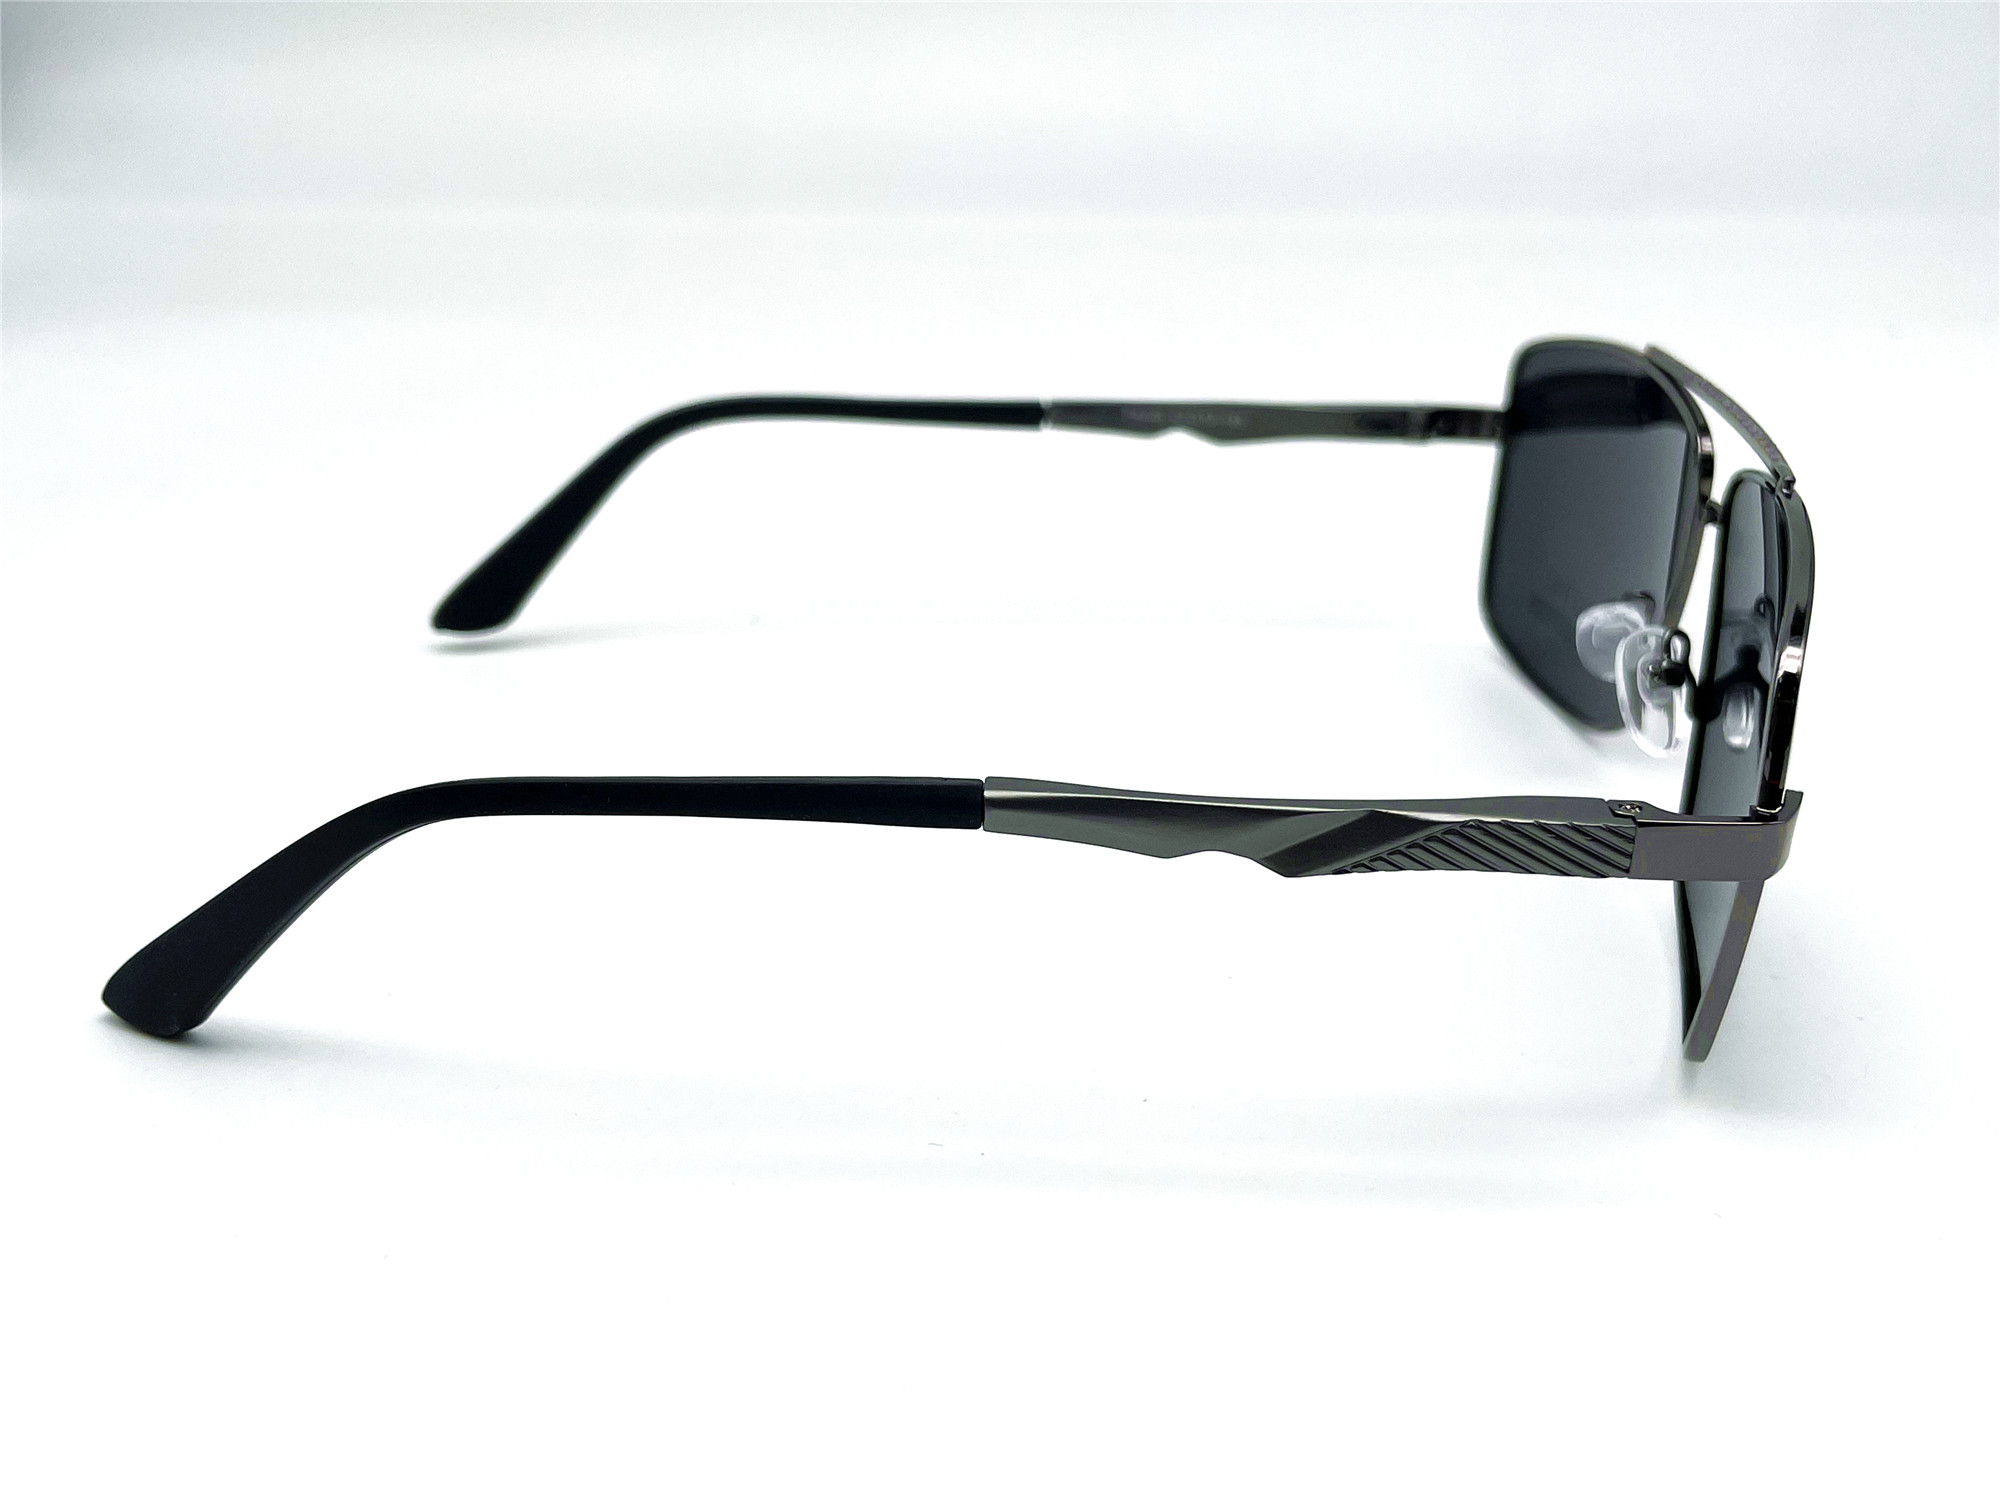  Солнцезащитные очки картинка Мужские Caipai Polarized Квадратные P4008-С2 